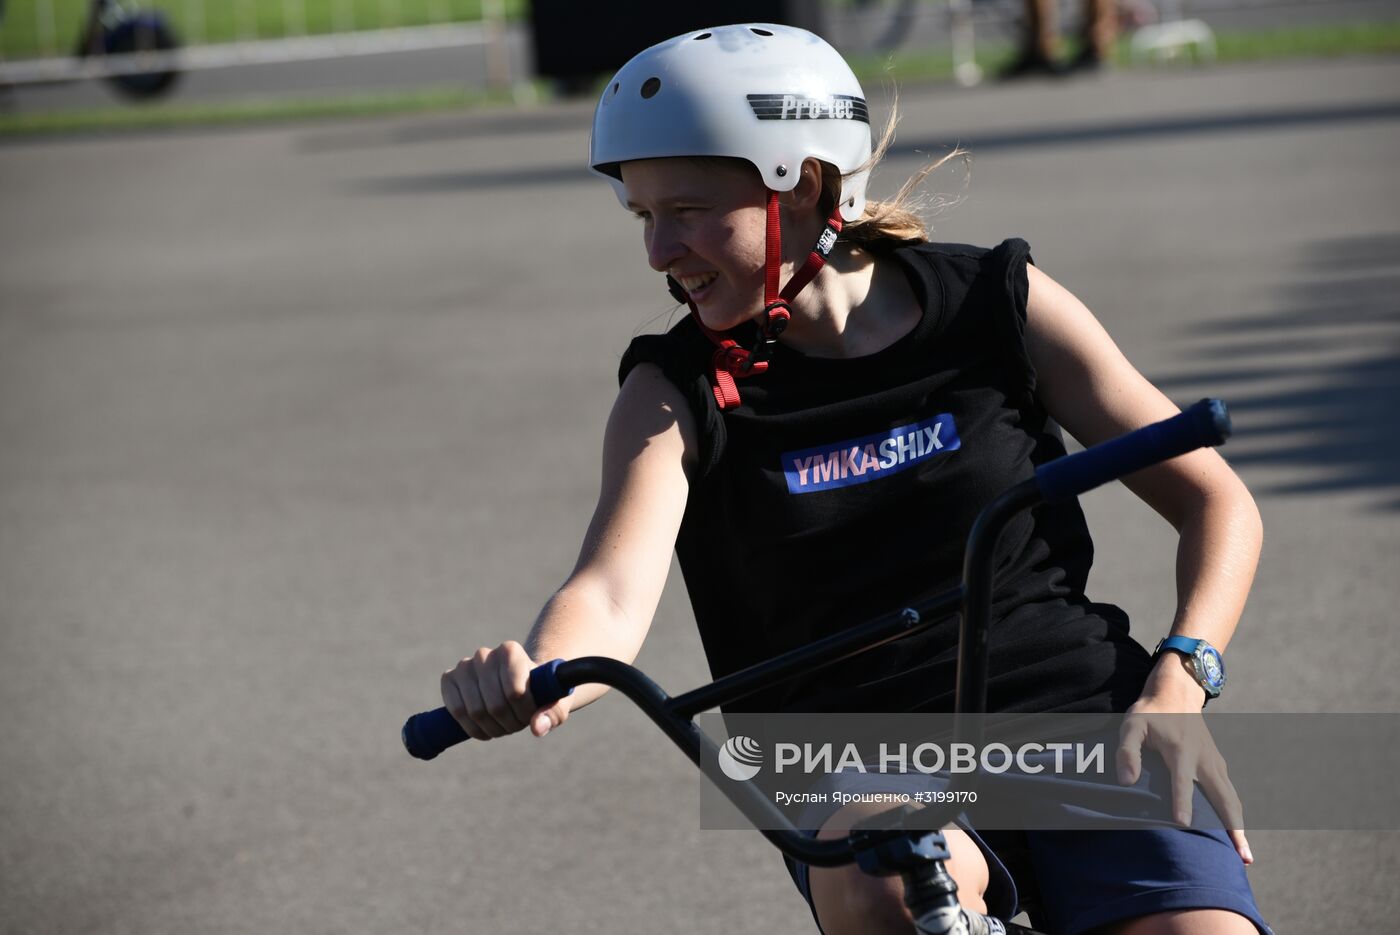 Чемпионат России по BMX-фристайлу